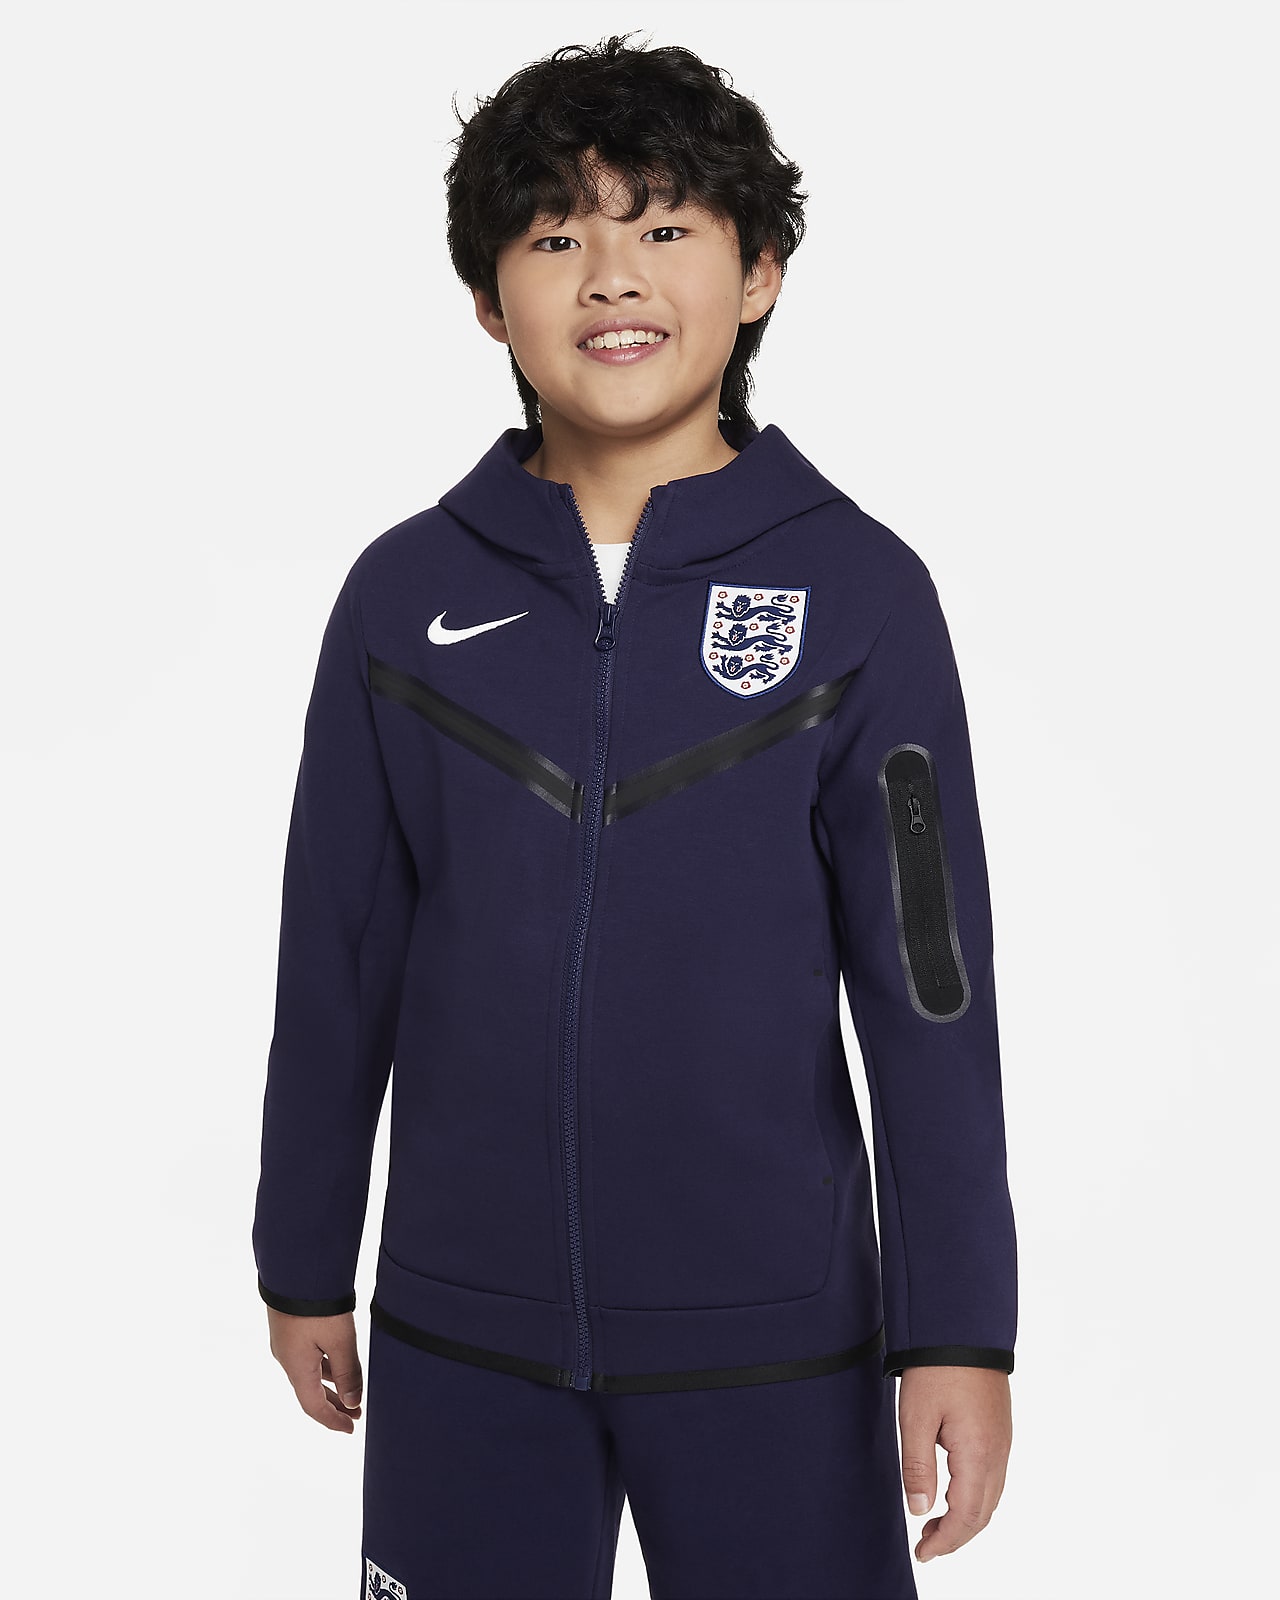 Ποδοσφαιρική μπλούζα με κουκούλα και φερμουάρ σε όλο το μήκος Nike Αγγλία Tech Fleece για μεγάλα αγόρια